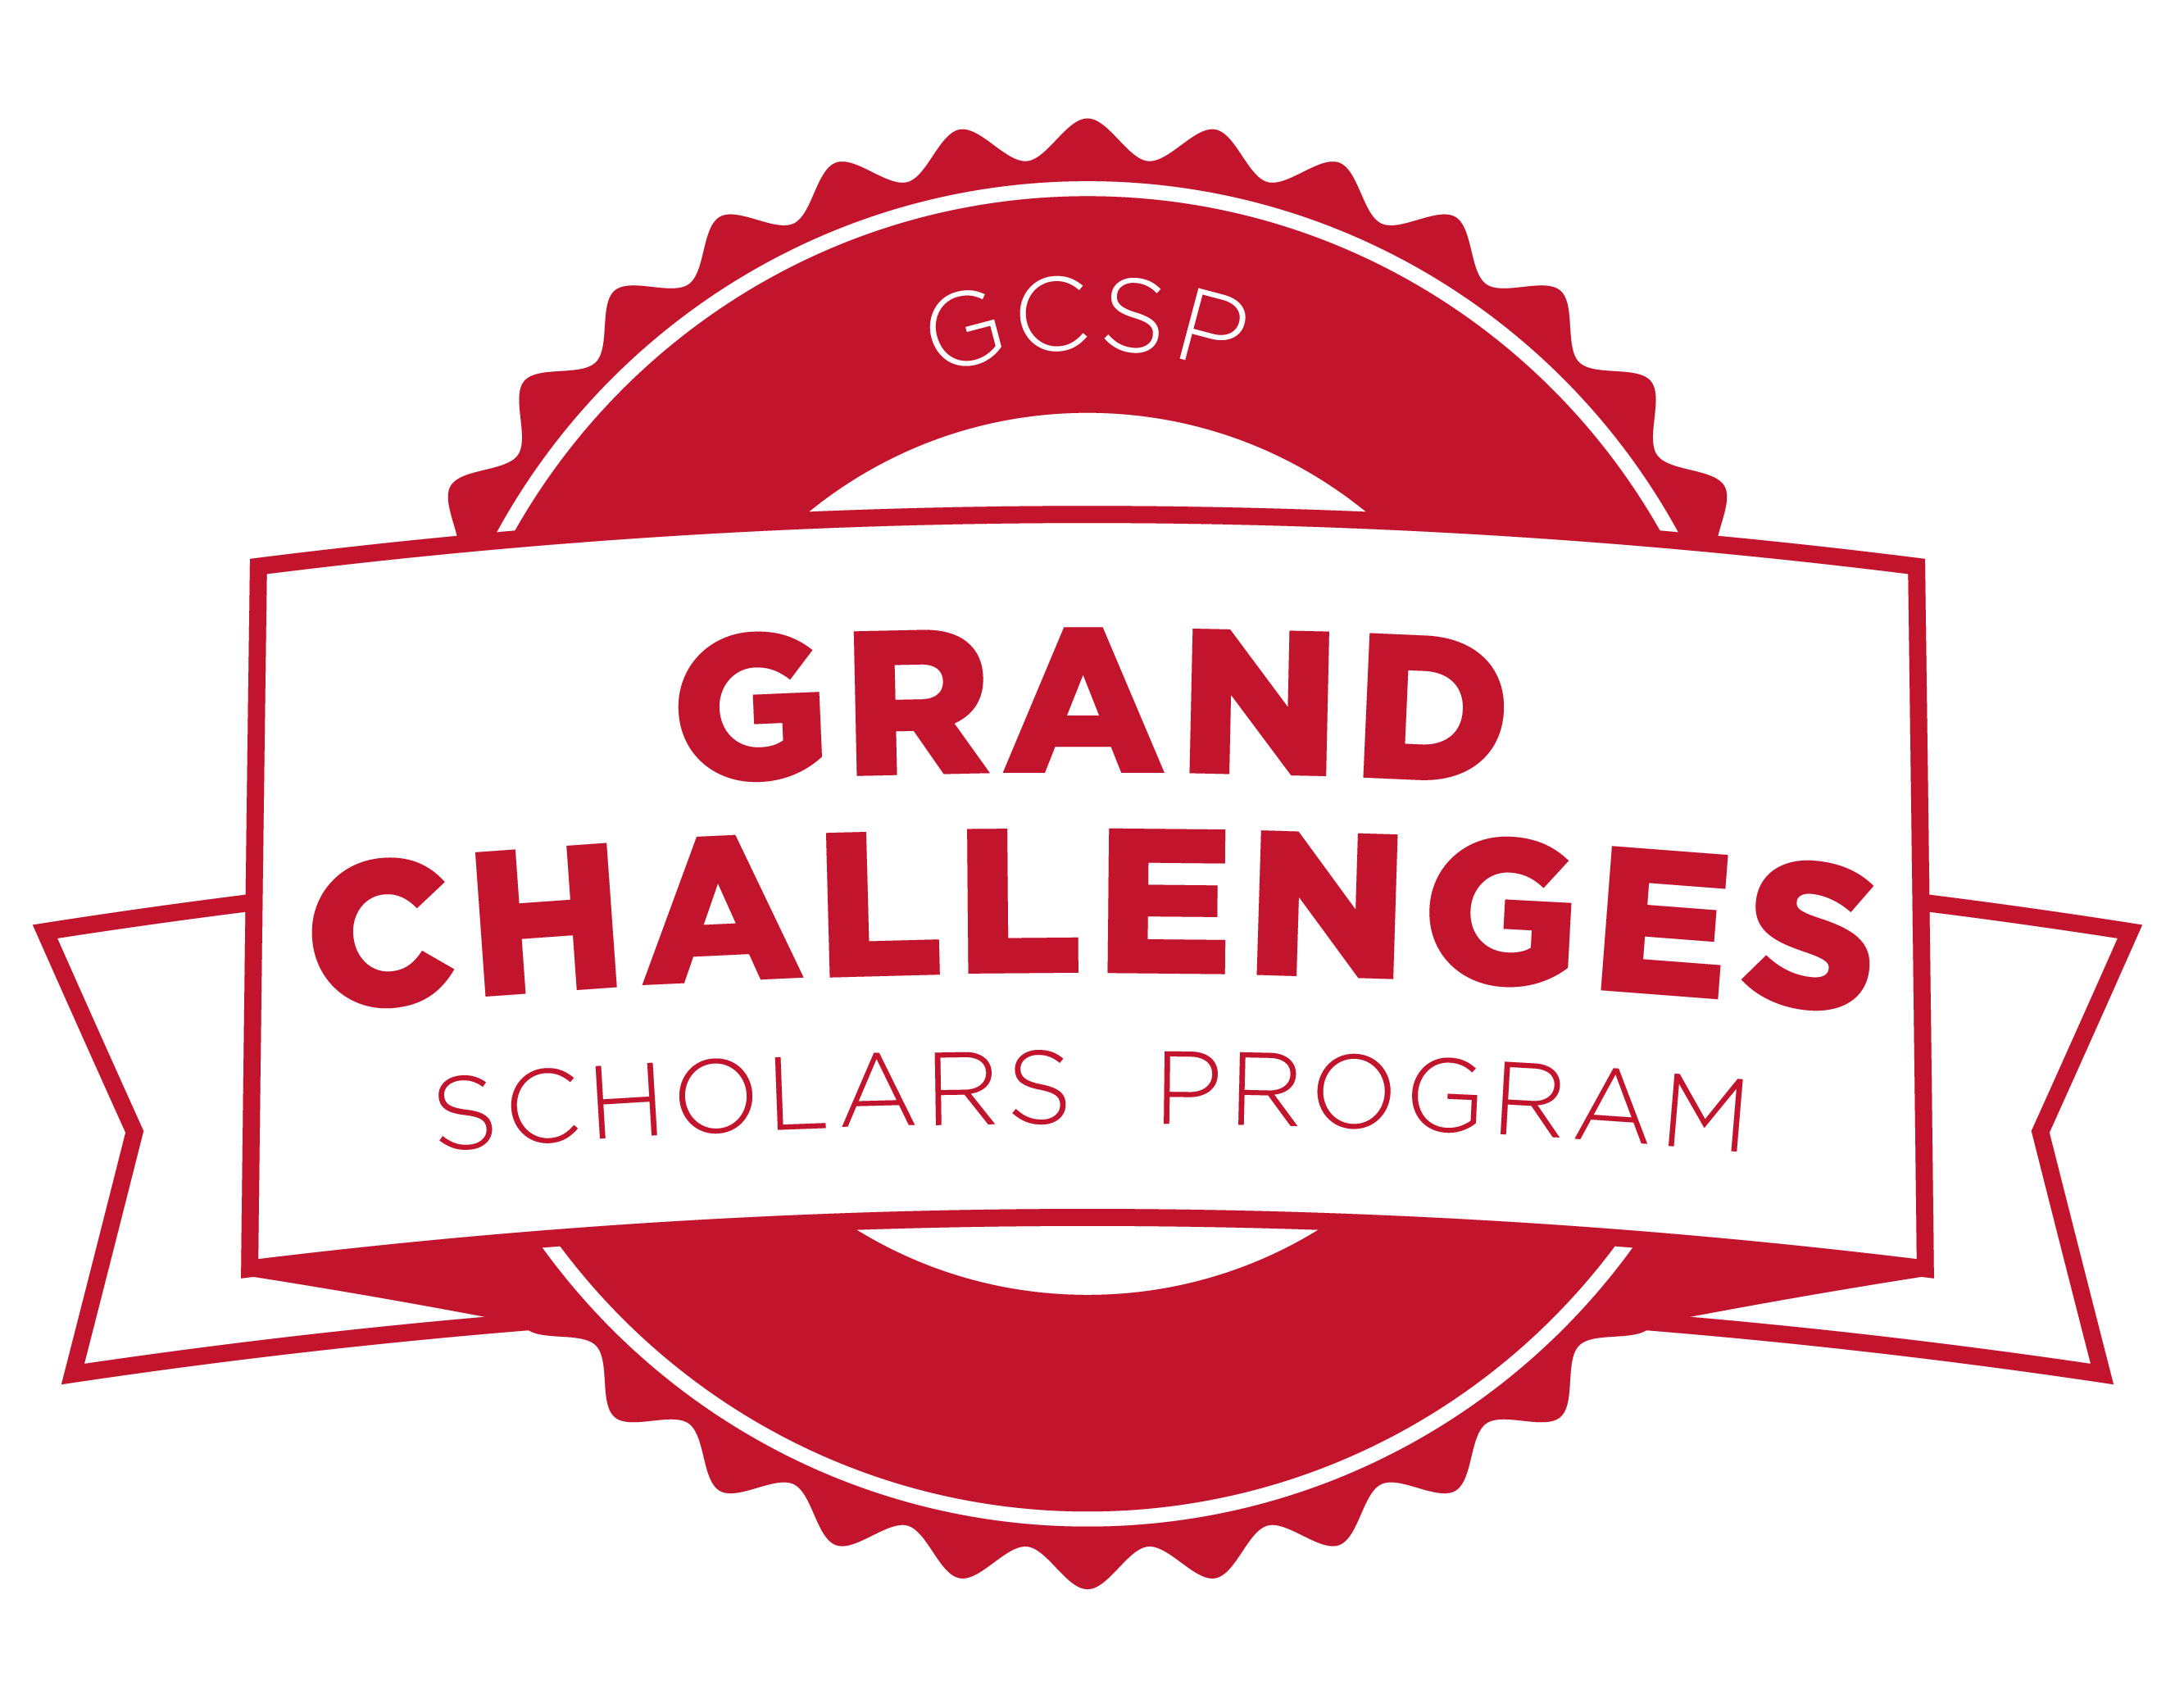 GCSP Grand Challenges Scholars Program